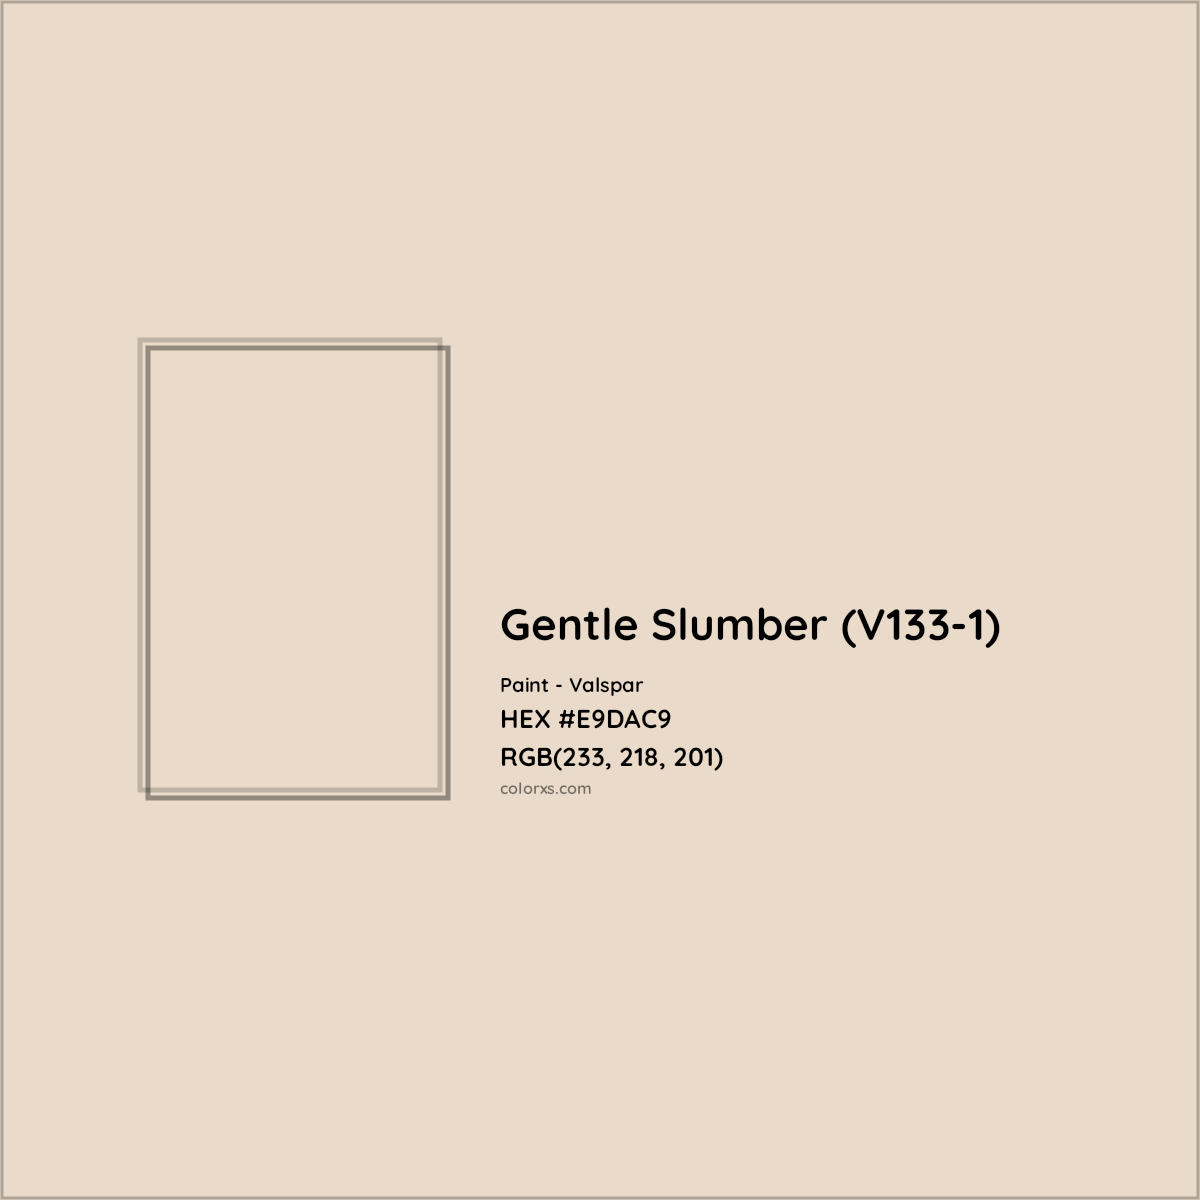 HEX #E9DAC9 Gentle Slumber (V133-1) Paint Valspar - Color Code